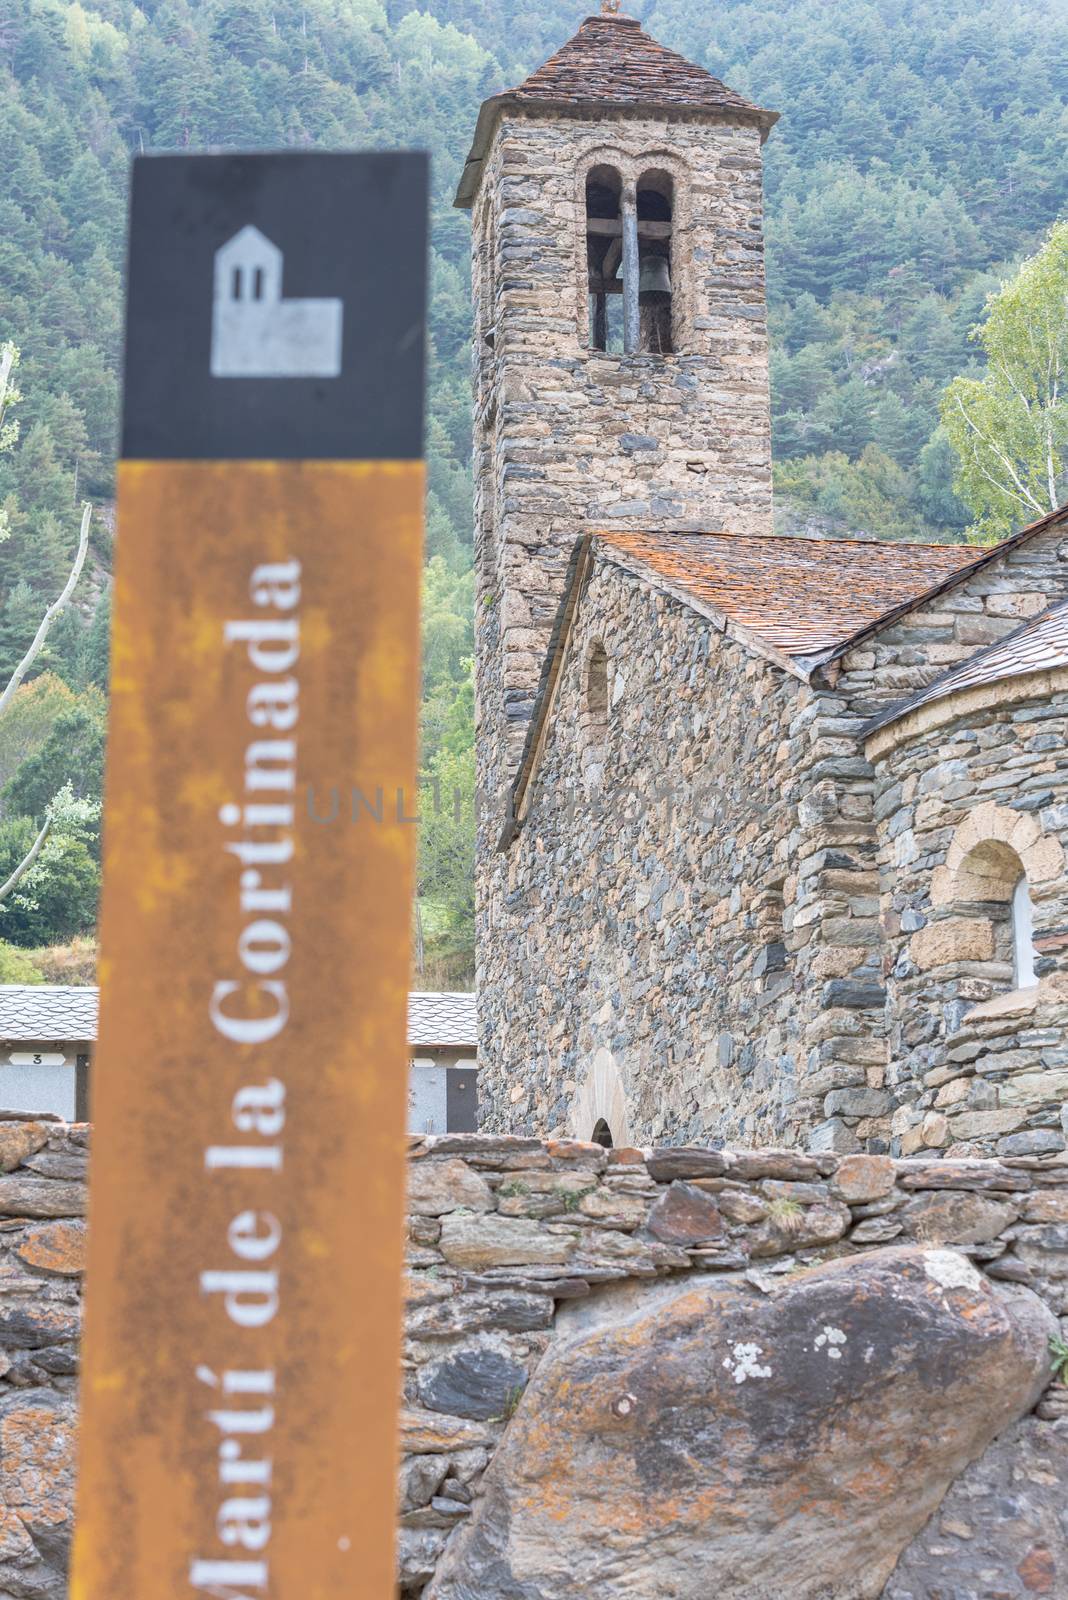 Ordino, Andorra: 26 August 2020: Church of Sant Marti de la Cortinada, Ordino, Andorra in Summer.